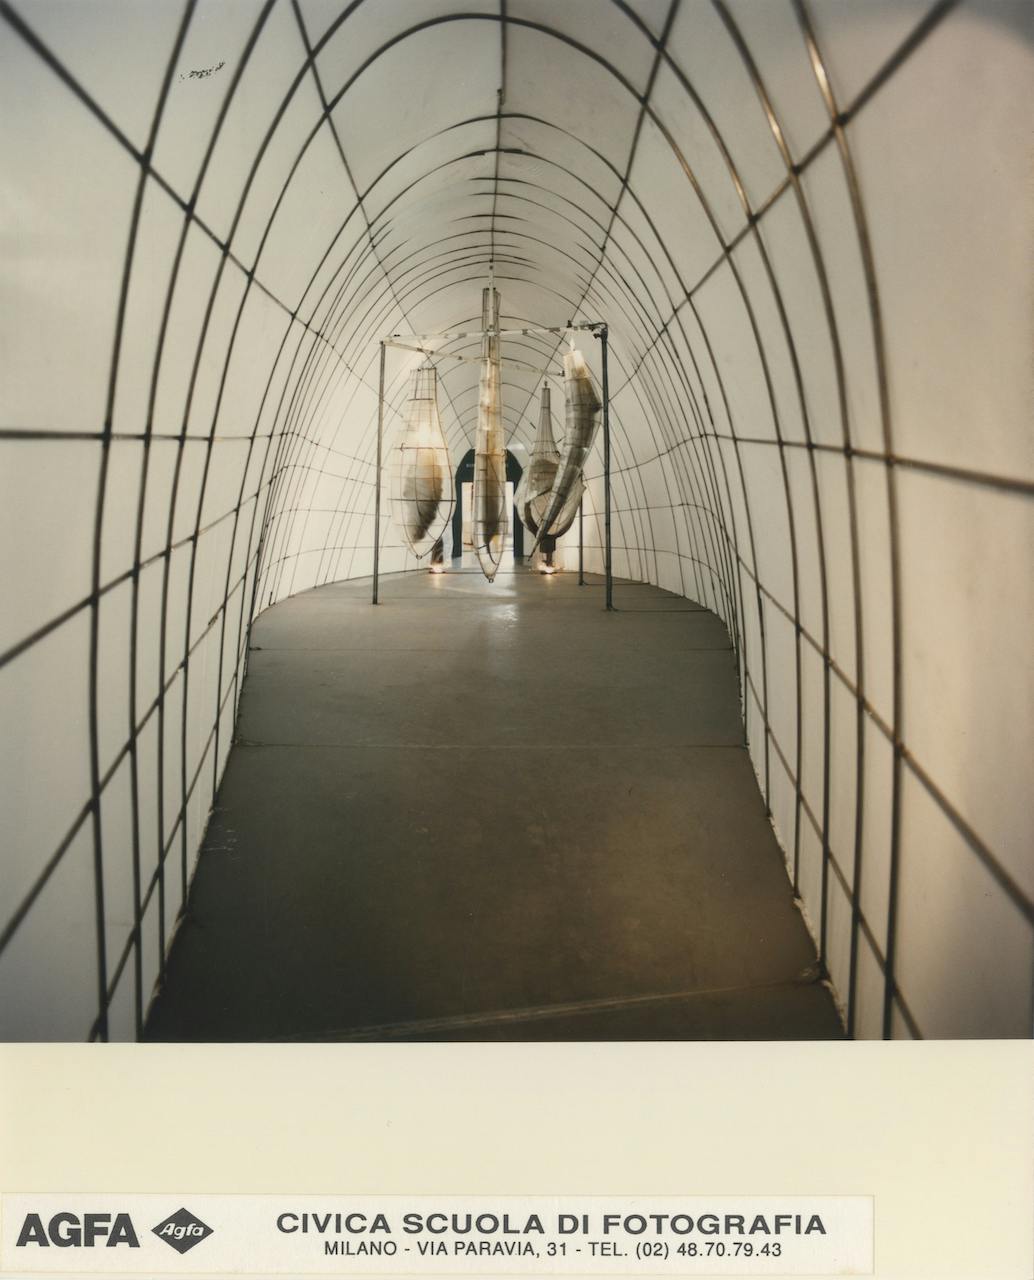 XVIII Triennale - L'Europa e il suo futuro, nelle Partecipazioni internazionali- Finlandia - "Il bozzolo" di Alvar Gullichsen e Stefan Lindfors, 1992 © Civica Scuola di Fotografia